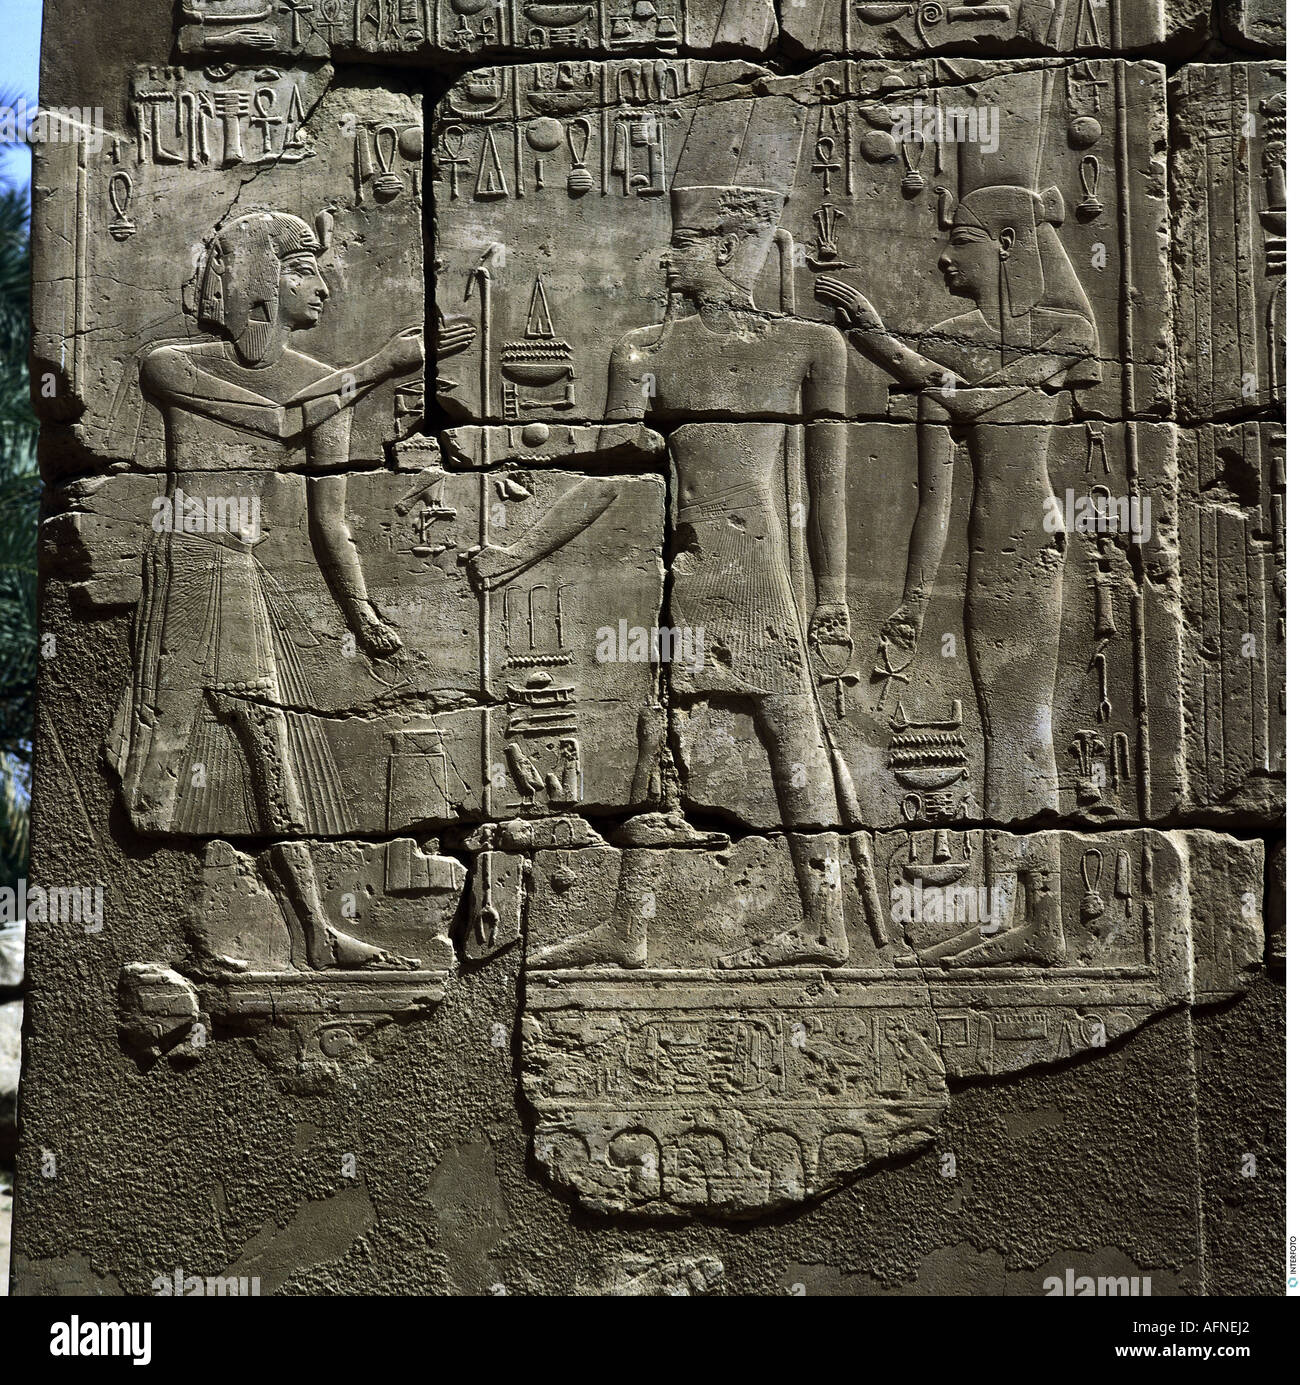 Géographie/voyage, Egypte, dieu Amun loué par un roi, soulagement, temple d'Amun, Karnak, 18ème dynastie, hiéroglyphes, pharaoh, monde ancien, Nouveau Royaume, sculpture, beaux-arts, historique, monde ancien, Banque D'Images